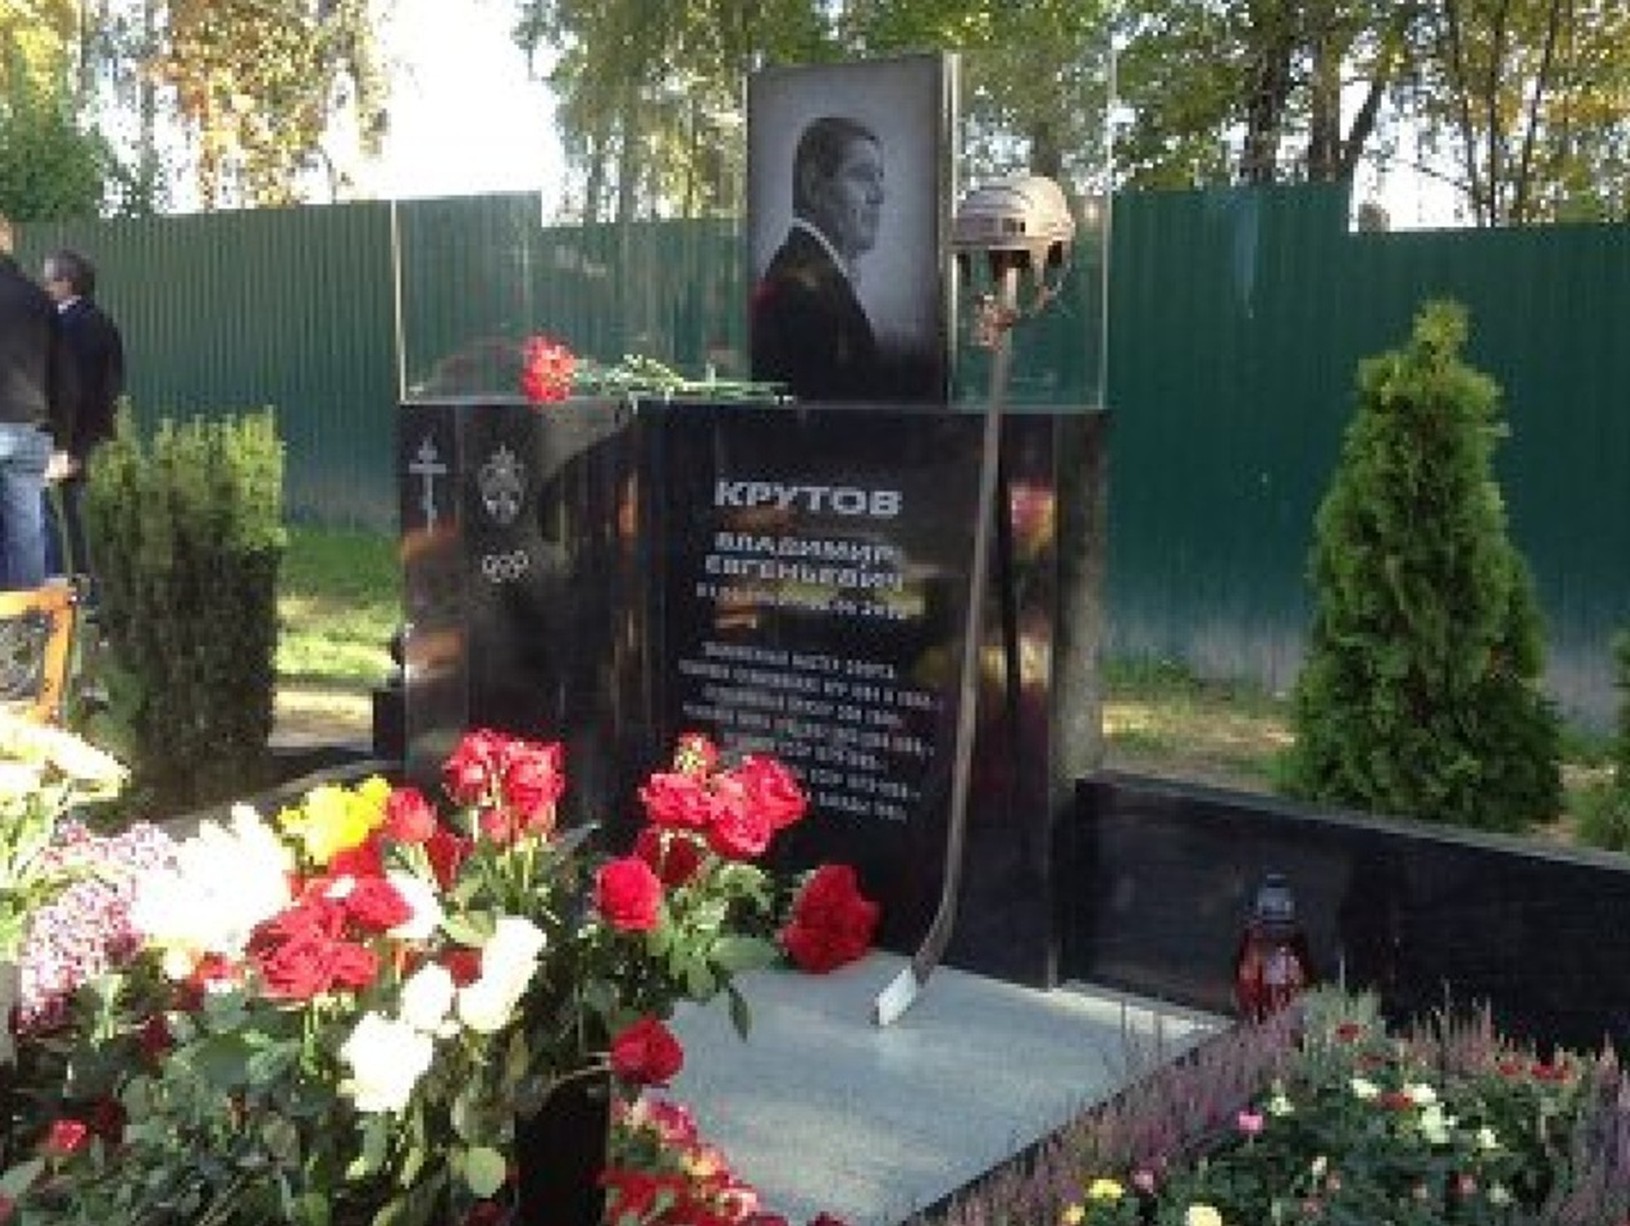 Pamätník venovaný Vladimírovi Krutovovi